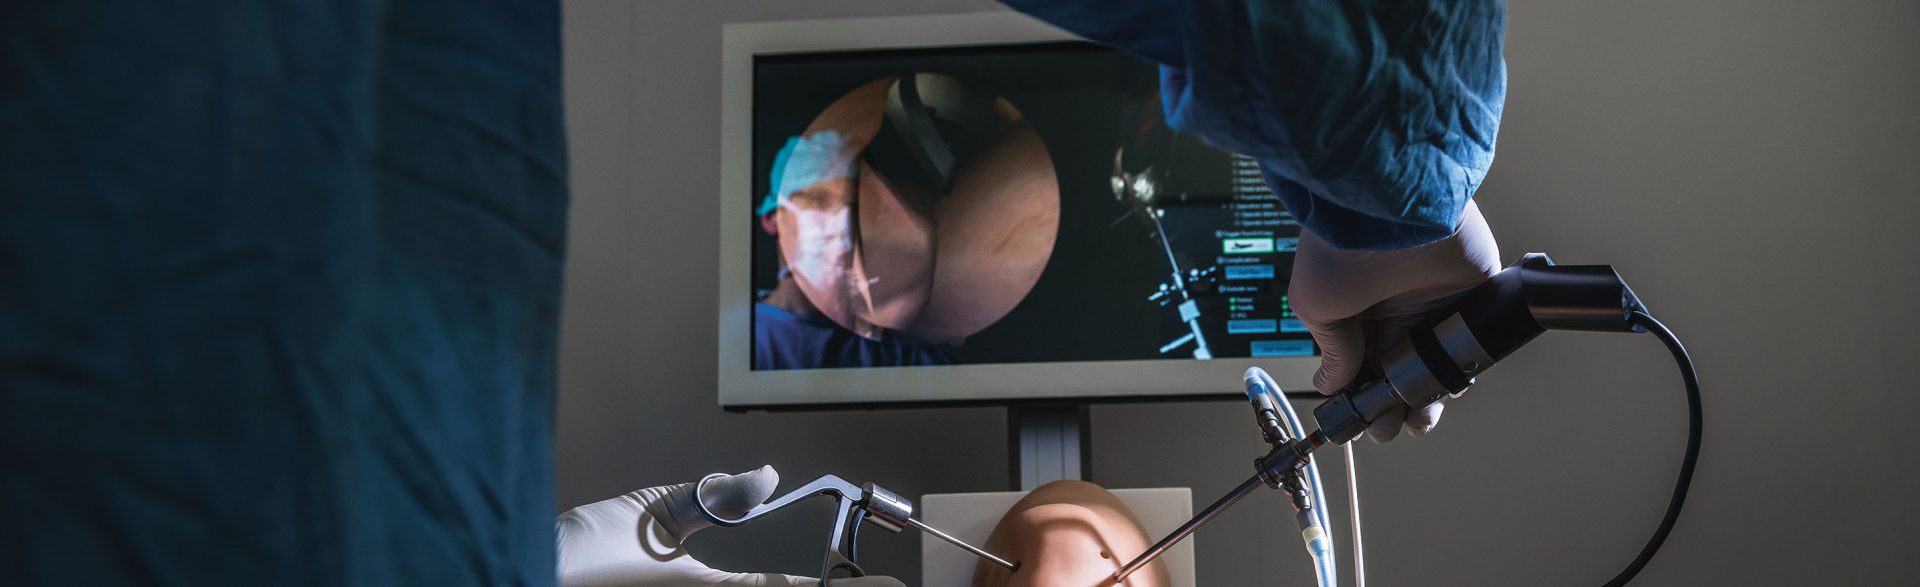 Virtuelles Training Für Chirurgen